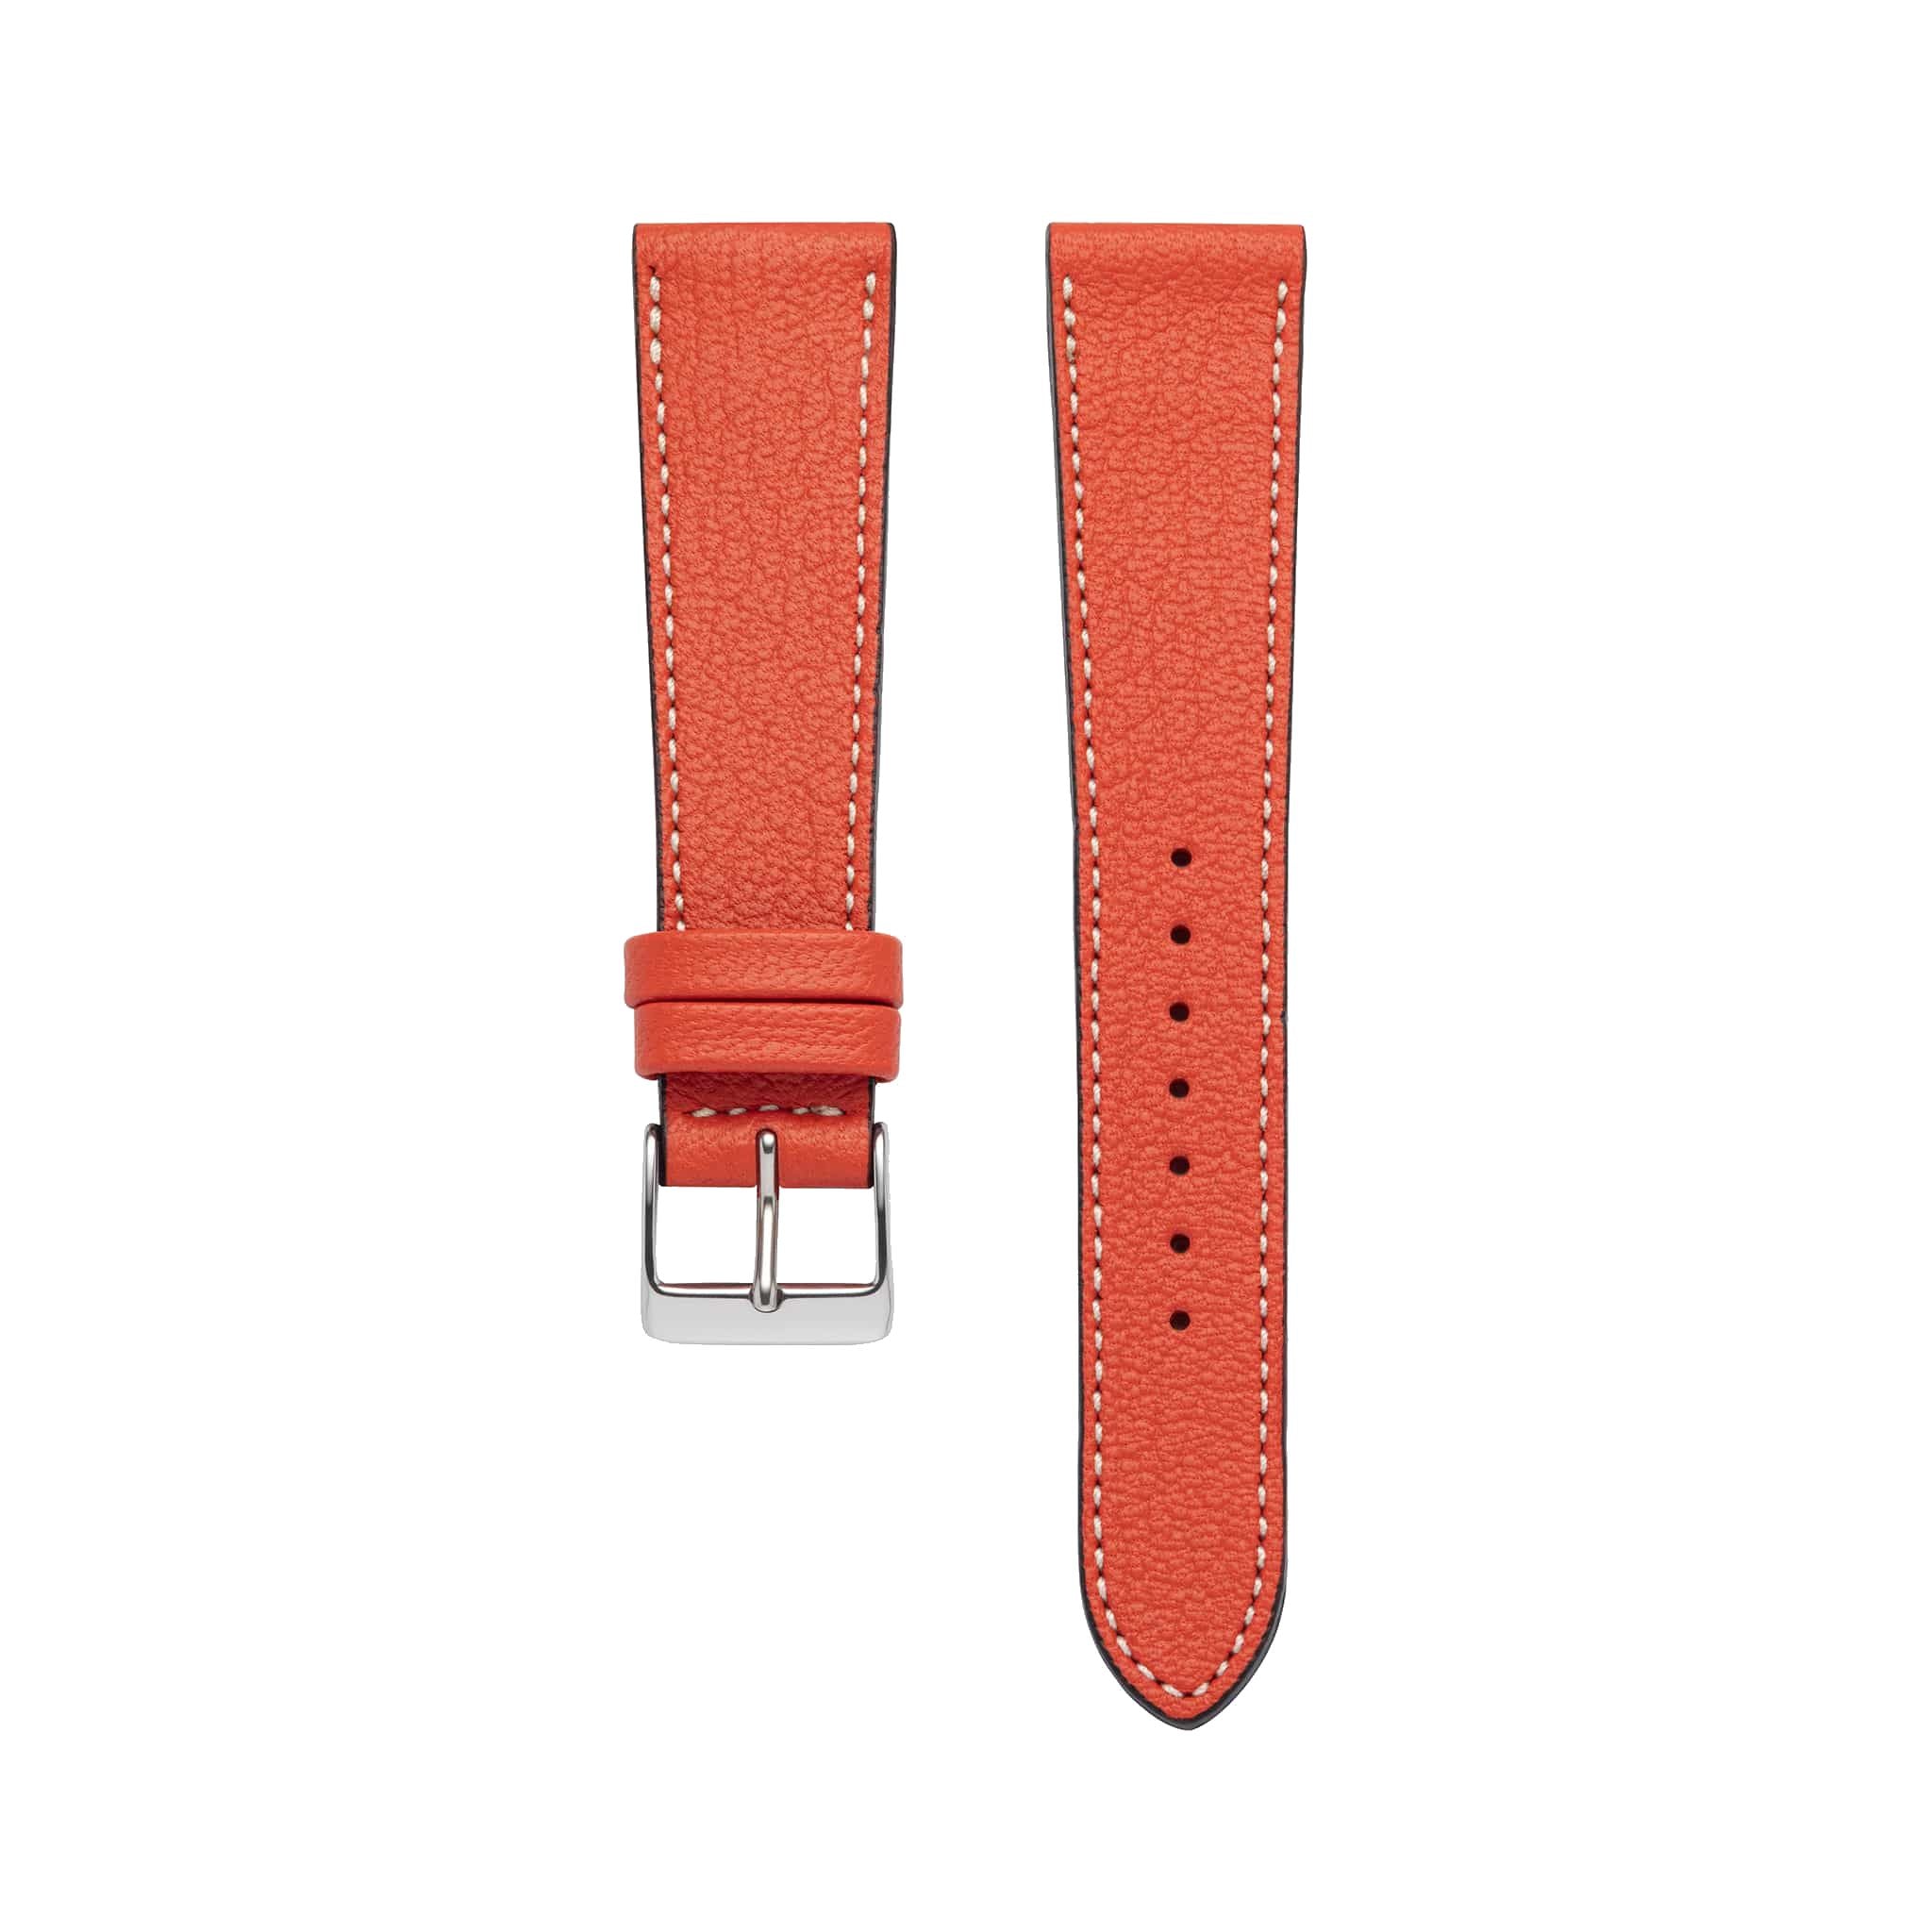 Goat Leather Slim | Armband aus Ziegenleder kompatibel mit Apple Watch-Orange-BerlinBravo